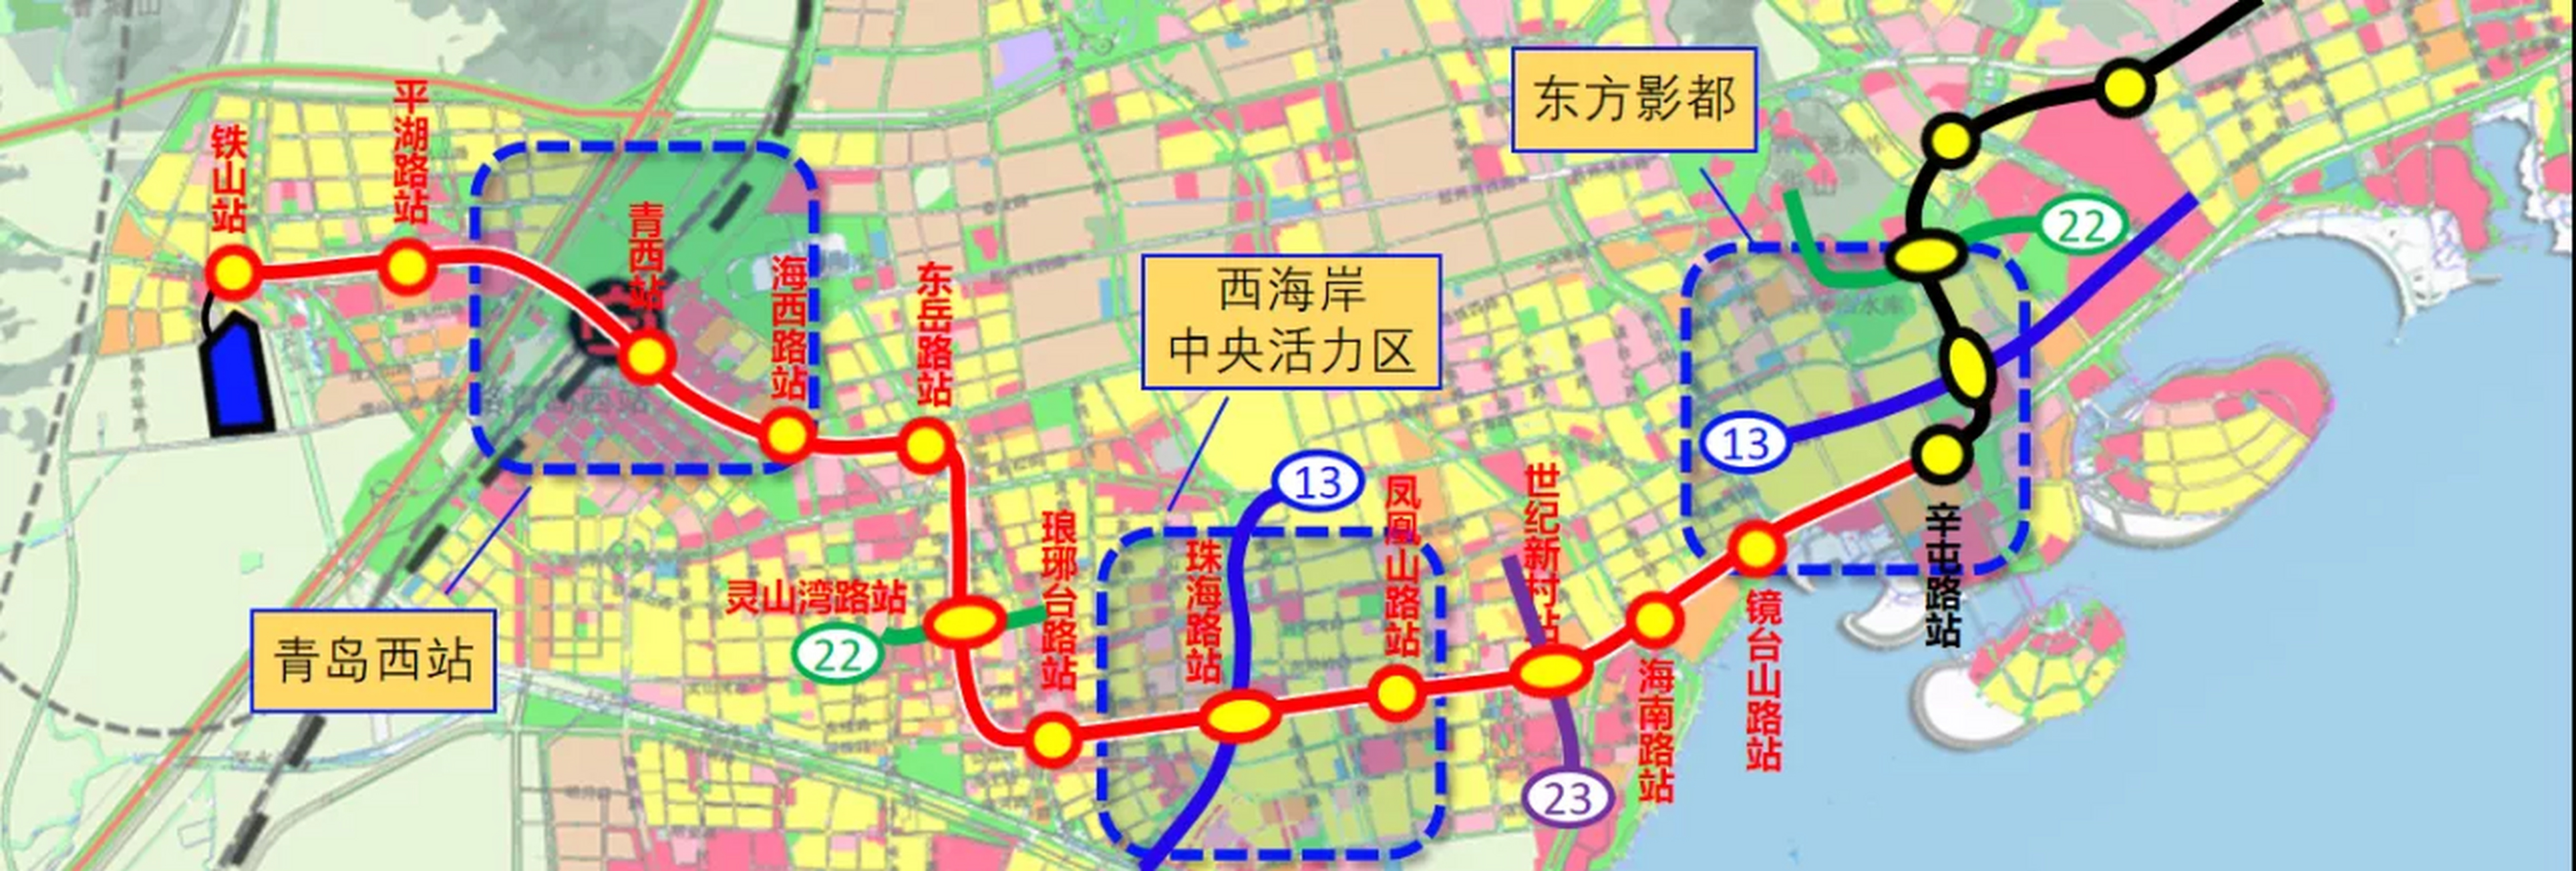 青岛地铁6号线二期(南段)规划 青岛地铁6号线二期(南段)规划网图,仅供